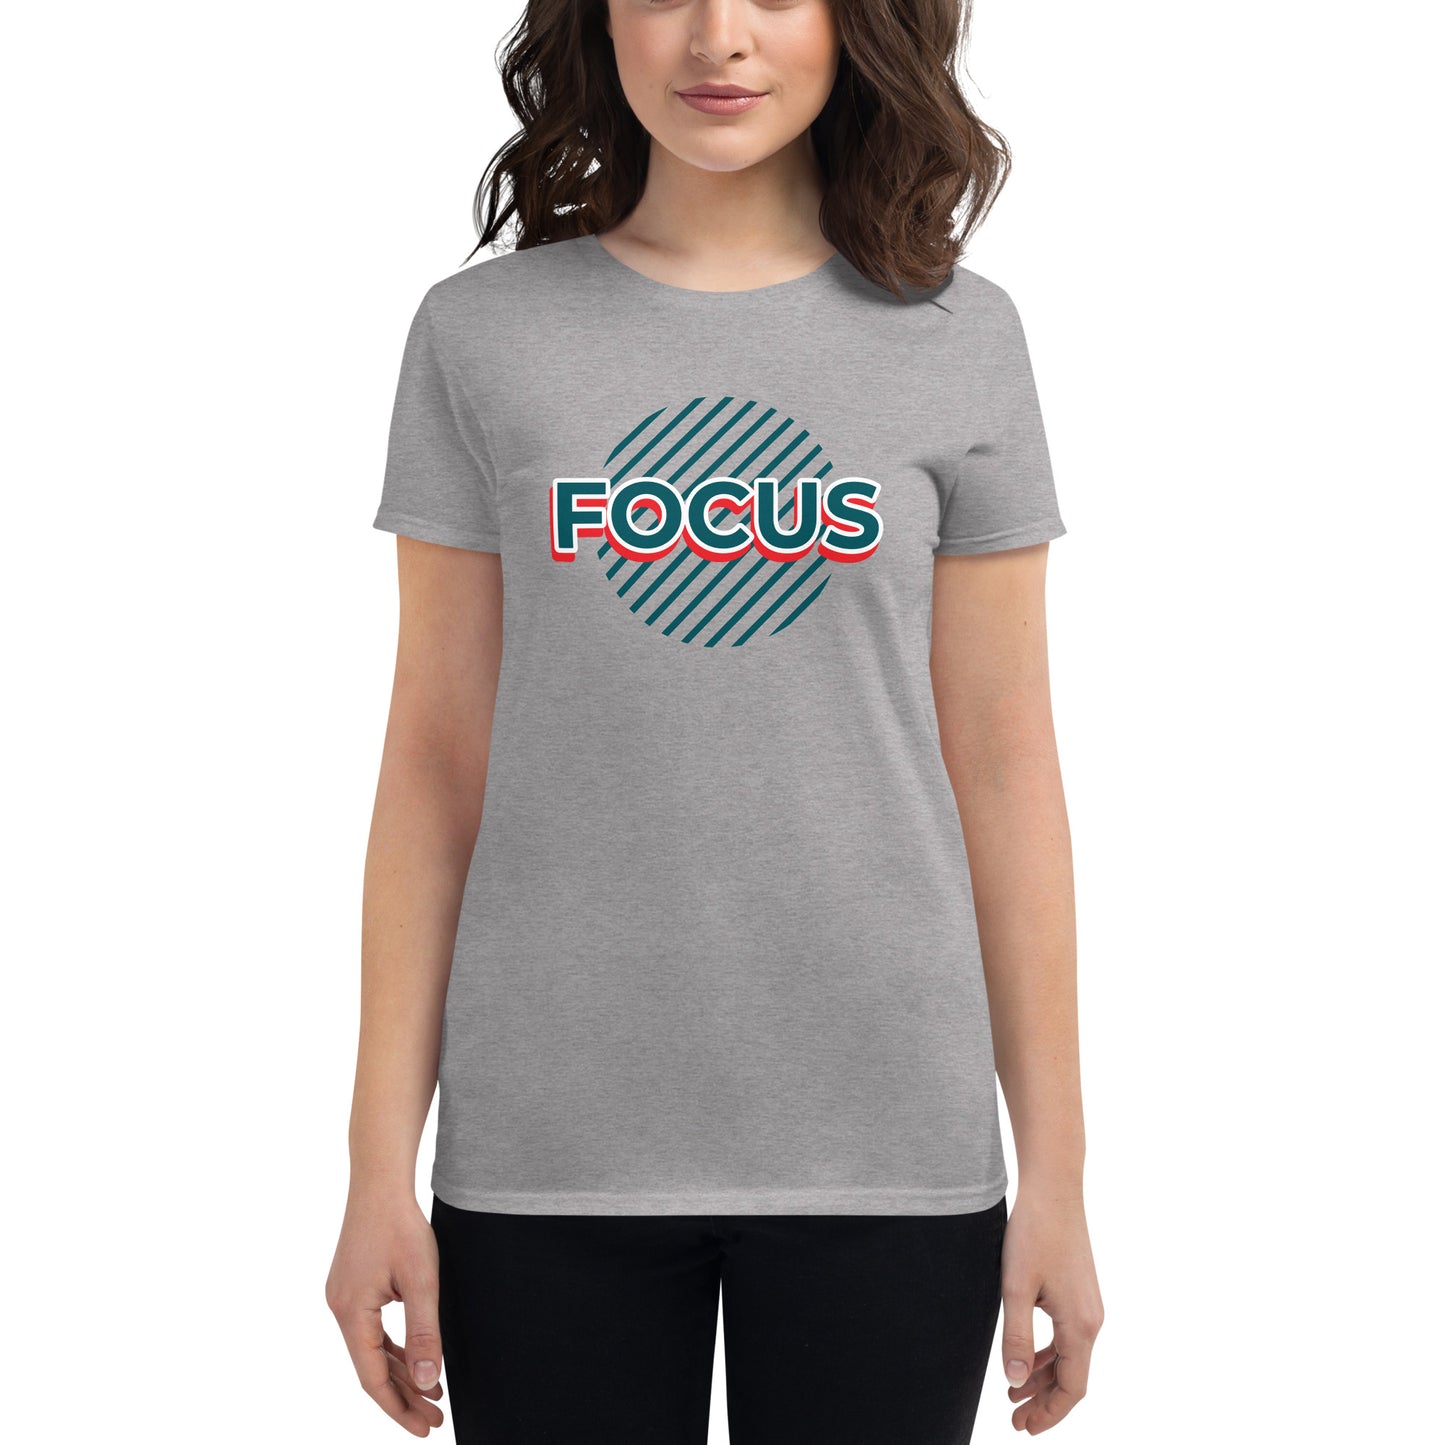 Focus T-Shirt Women